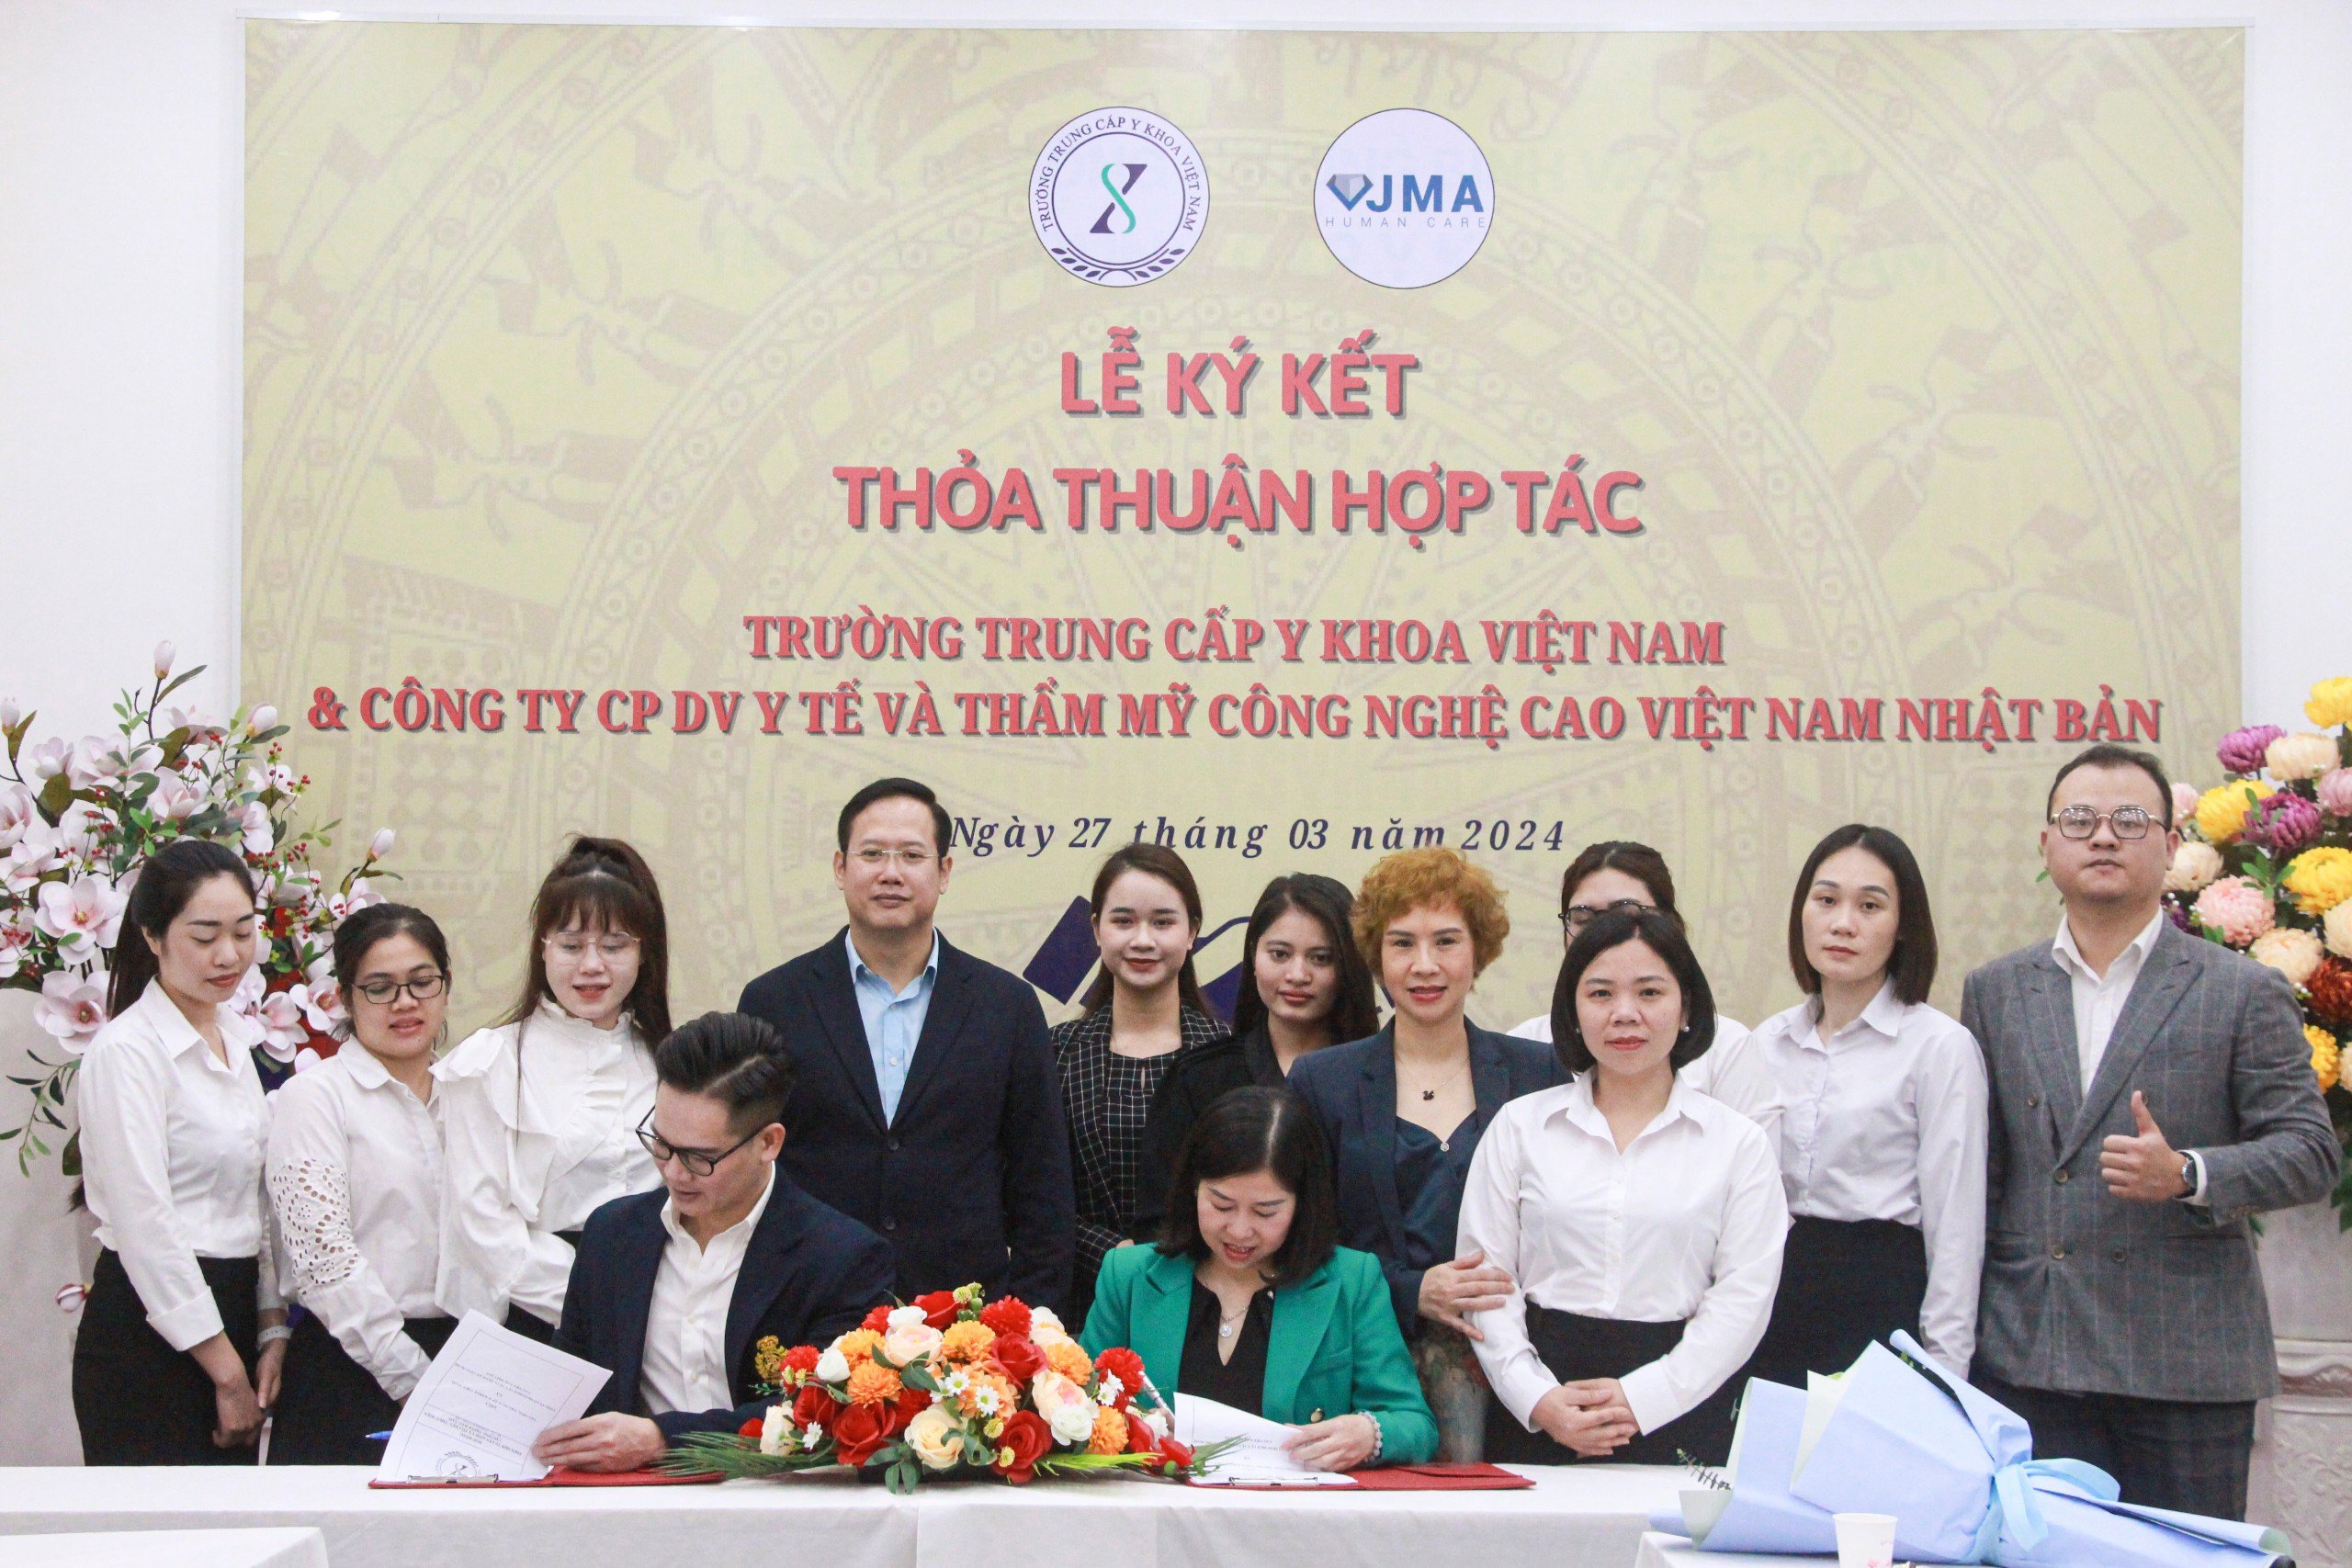 Lễ ký kết của Trường trung cấp Y Khoa Việt Nam với công ty VJMA